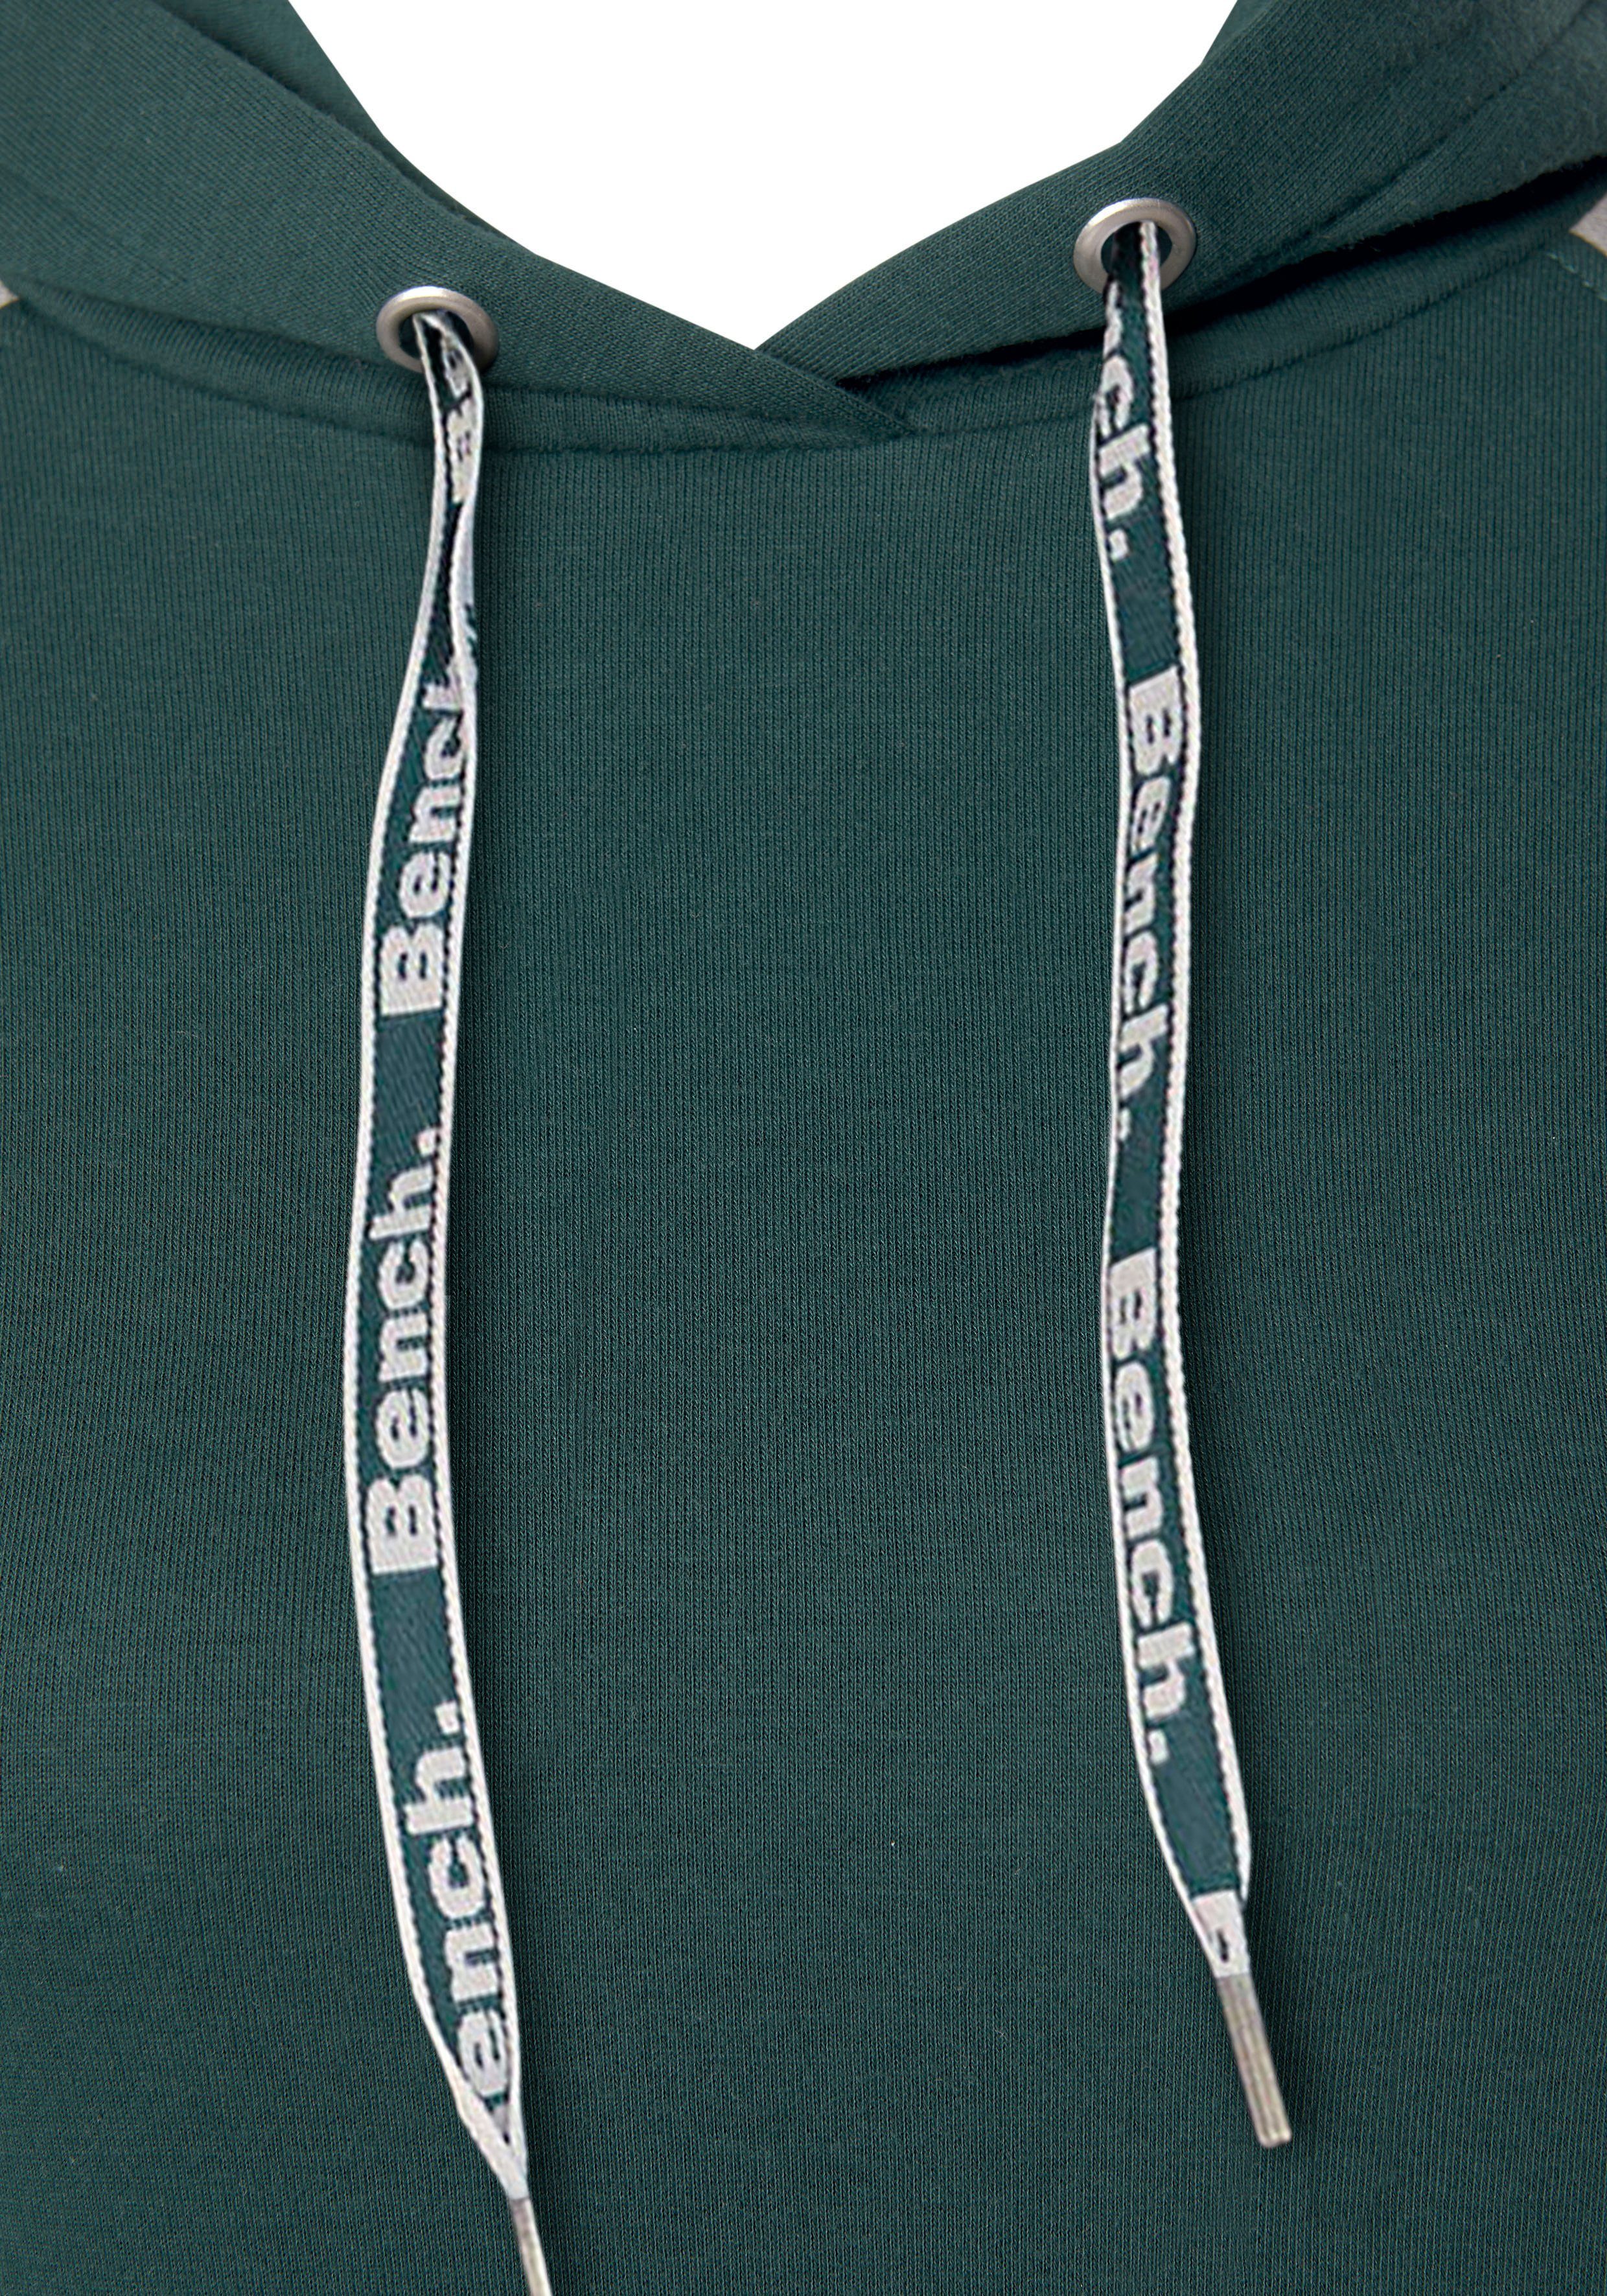 Kapuze Loungewear mit Bench. Sweatkleid farblich abgesetzten Ärmeln dunkelgrün-grau und